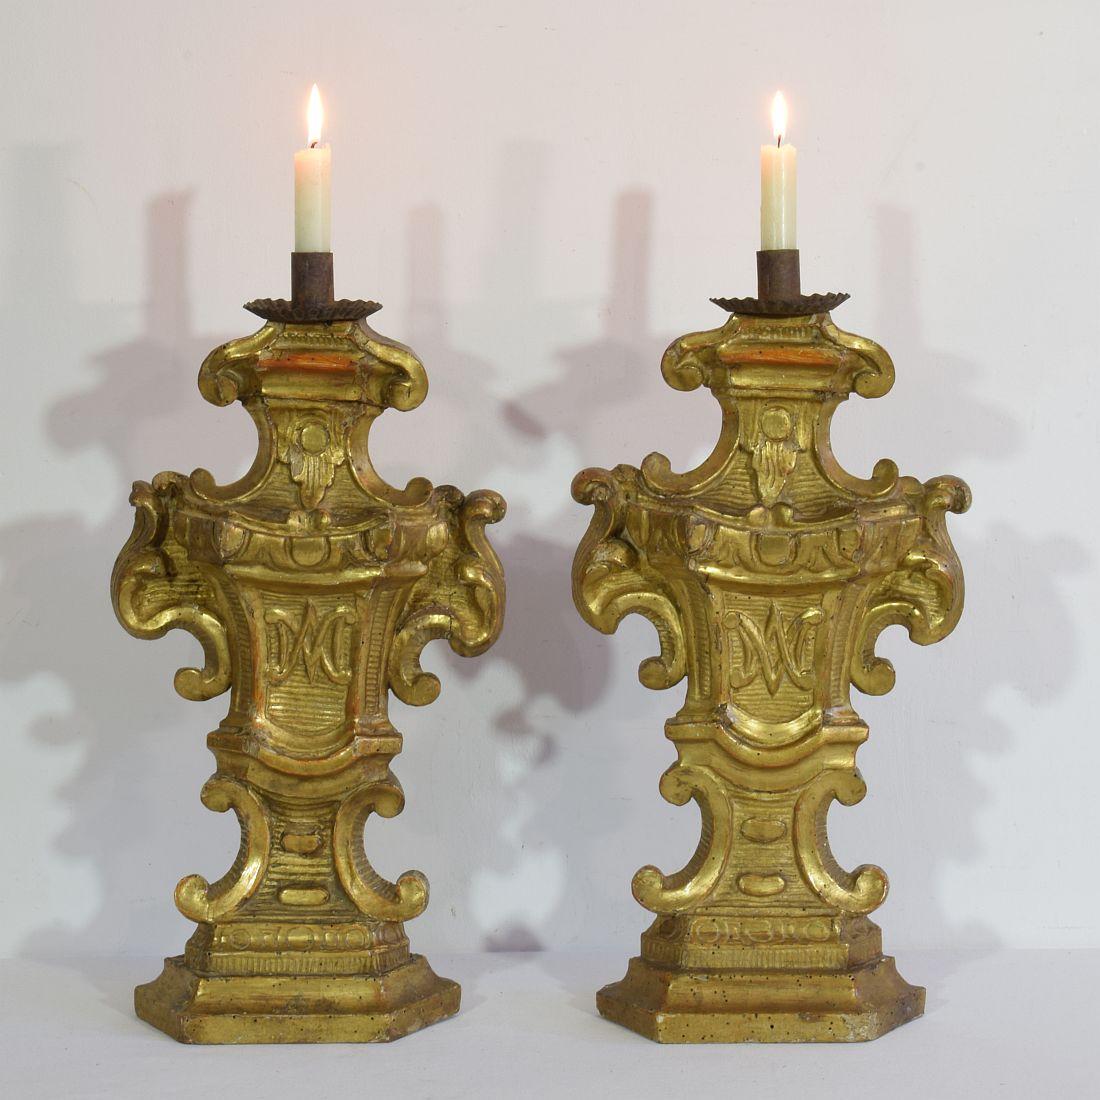 Magnifiques chandeliers baroques en bois doré, Italie, vers 1750-1780. Usures, réparations et petites pertes.
Mesure individuelle.